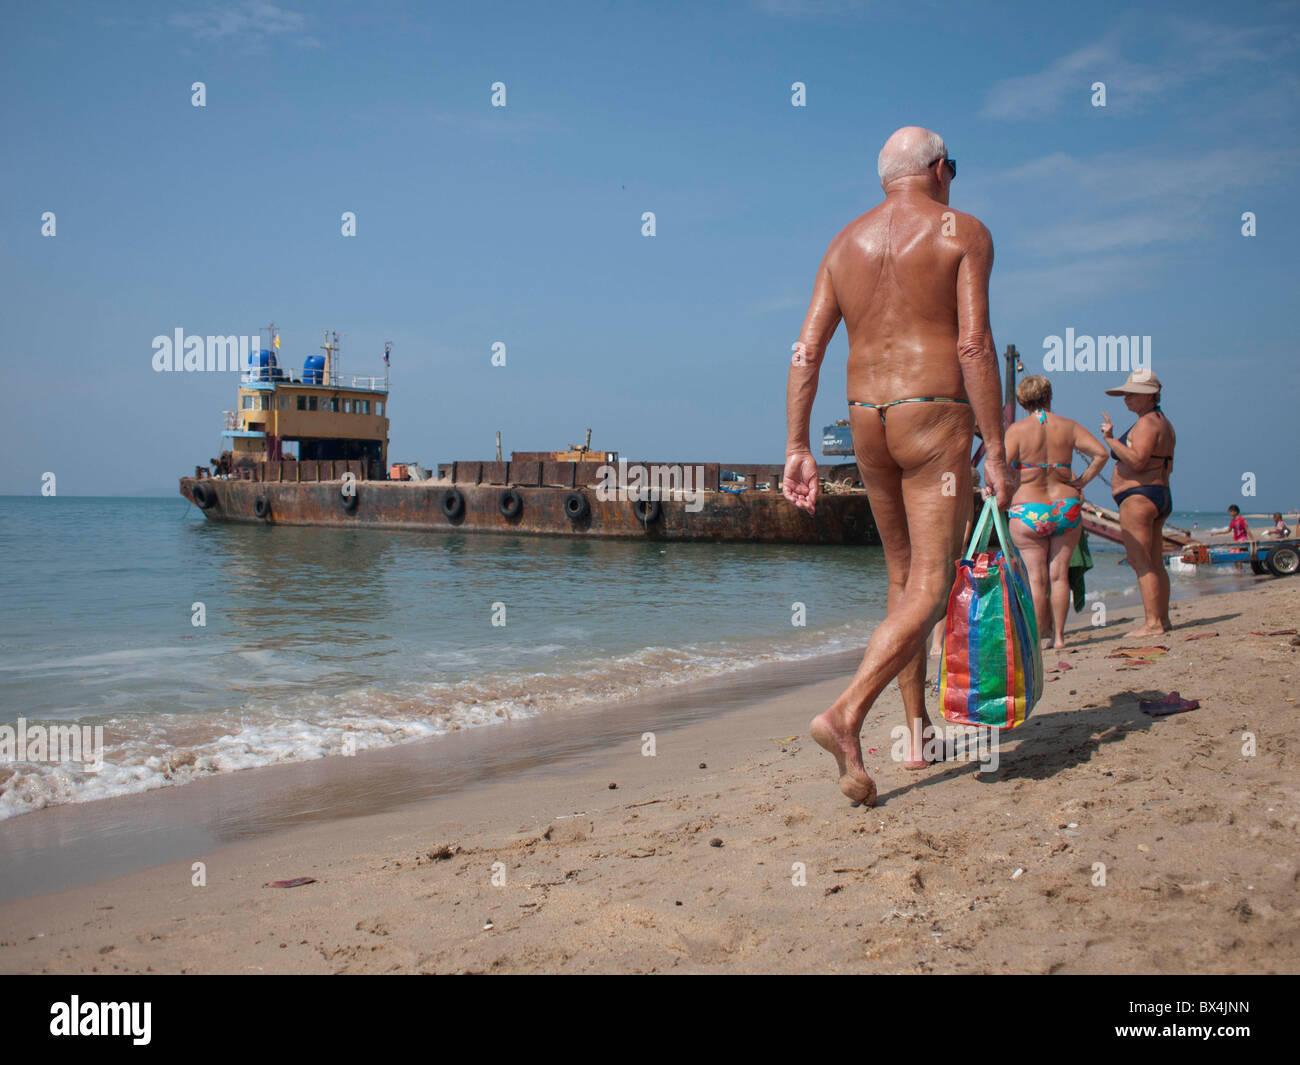 Old man in bikini